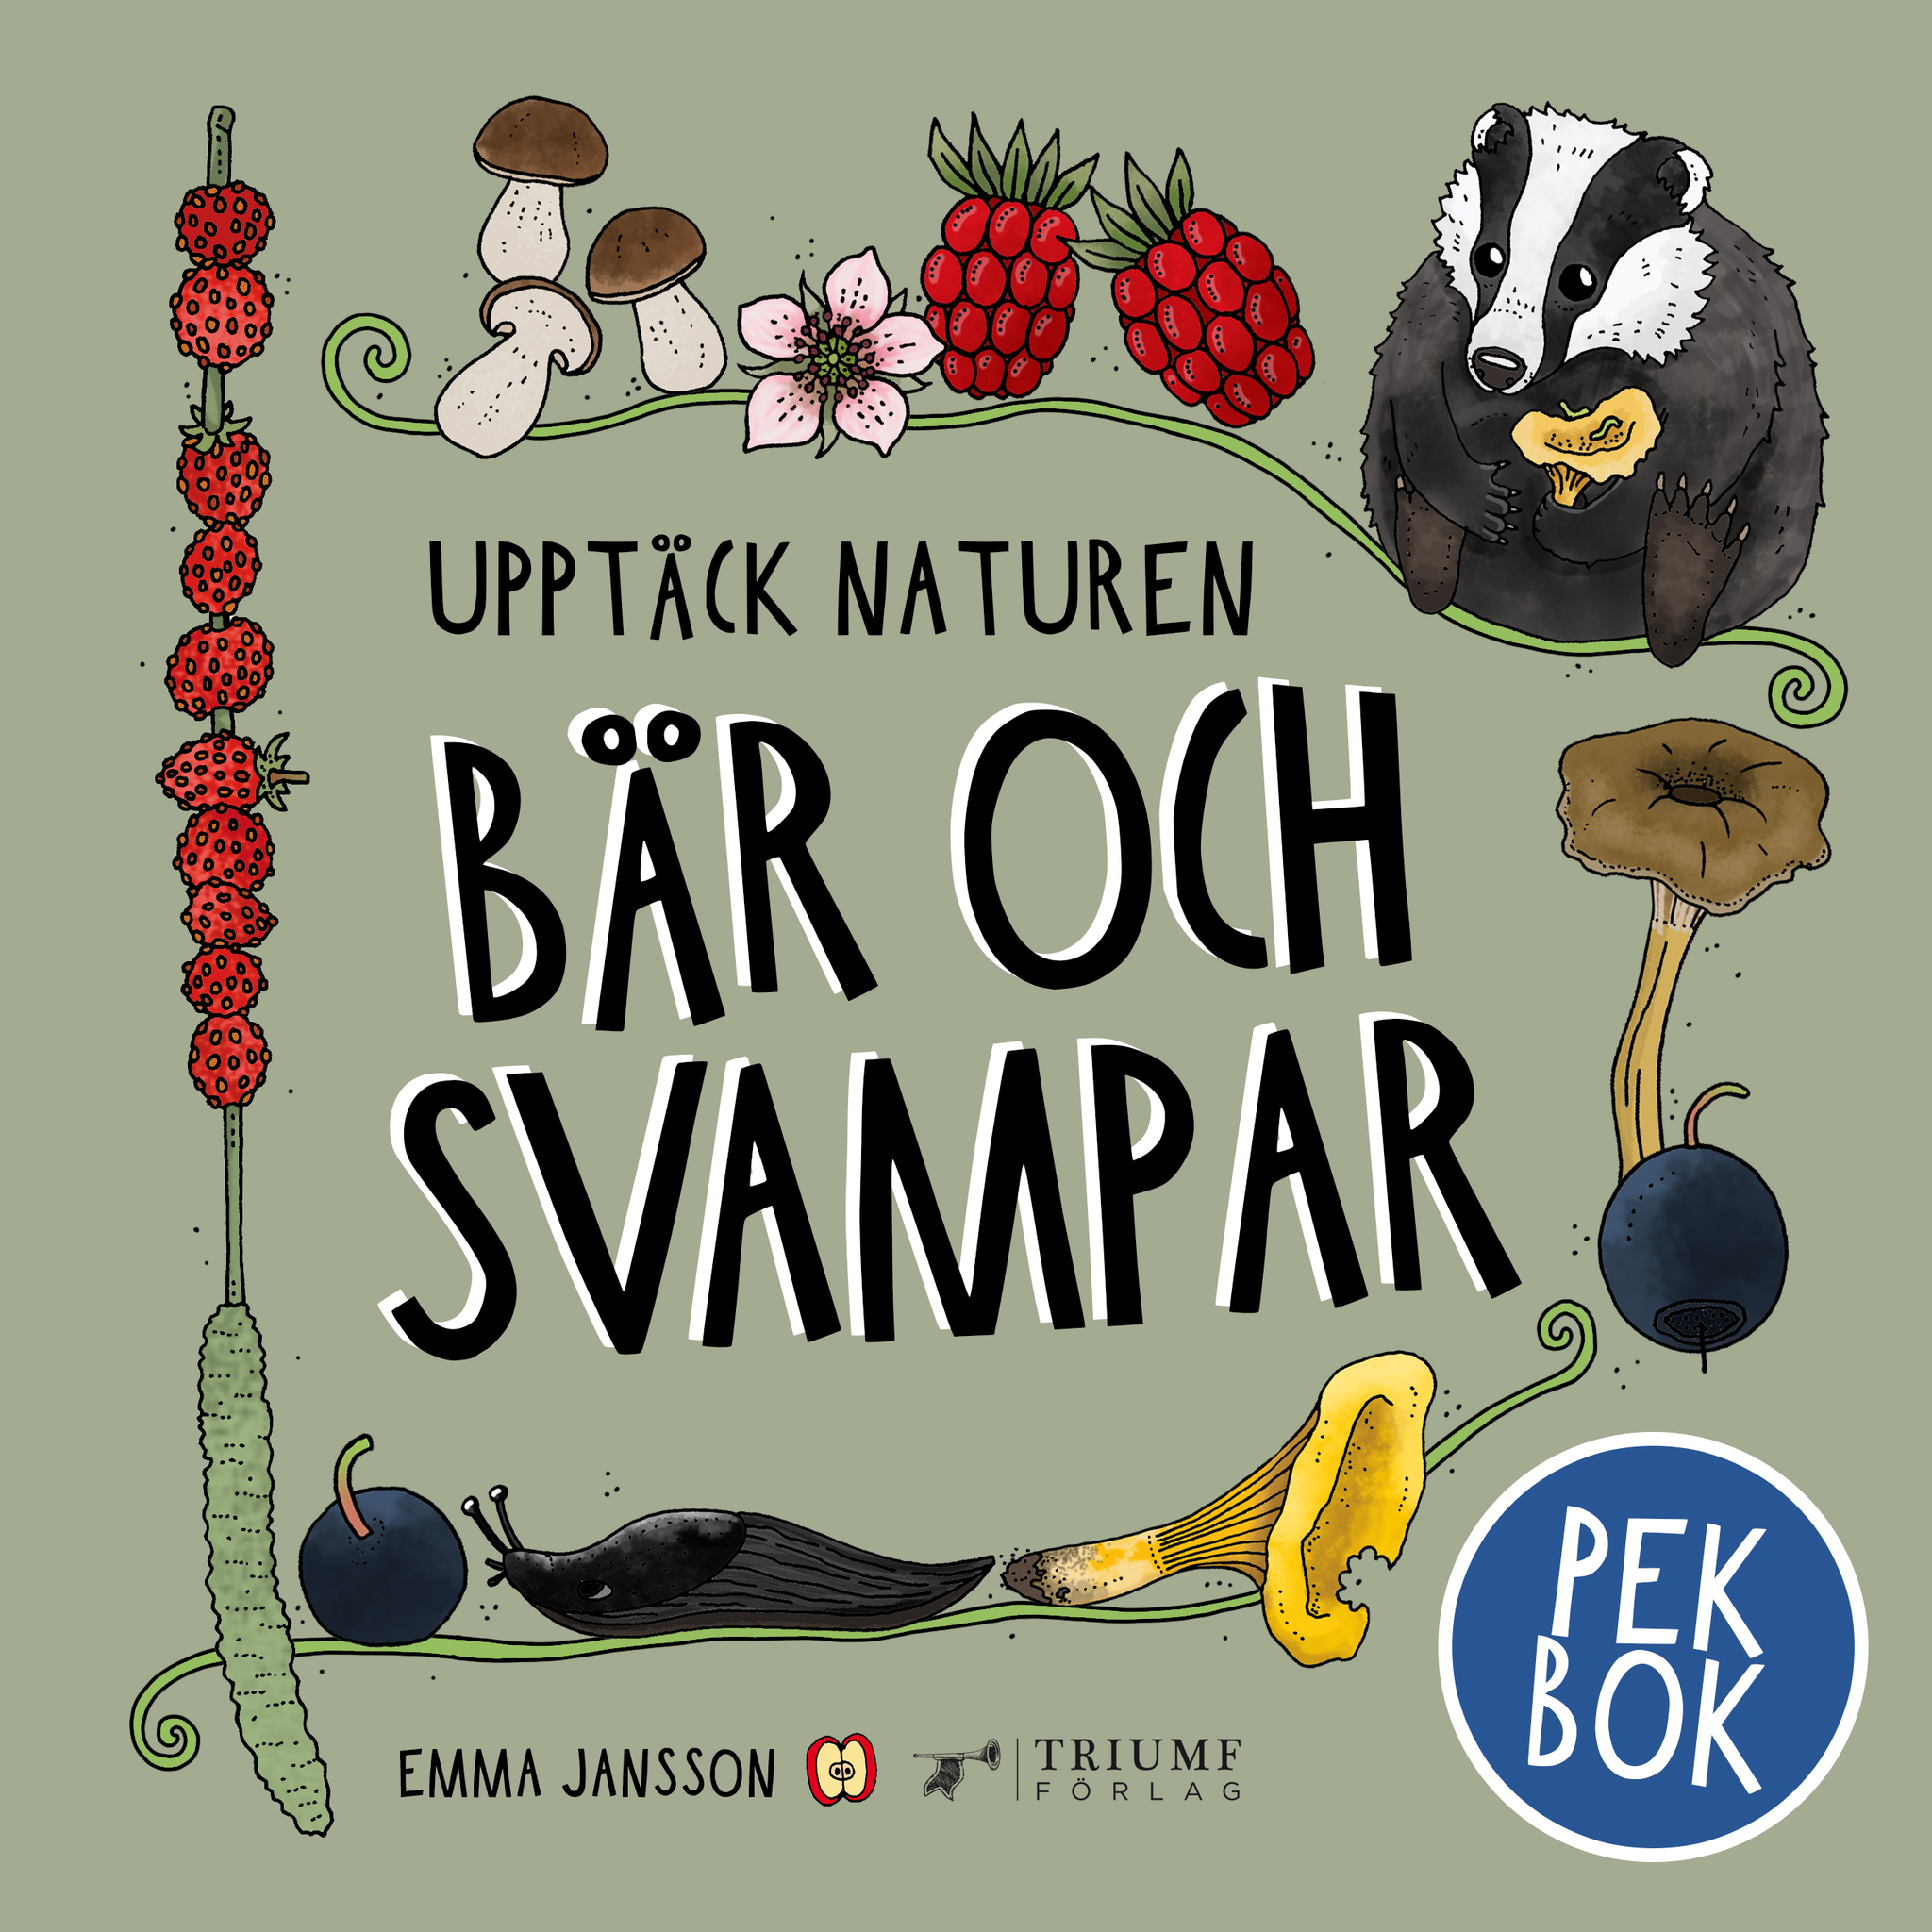 "Upptäck naturen - bär och svampar" av Emma Jansson